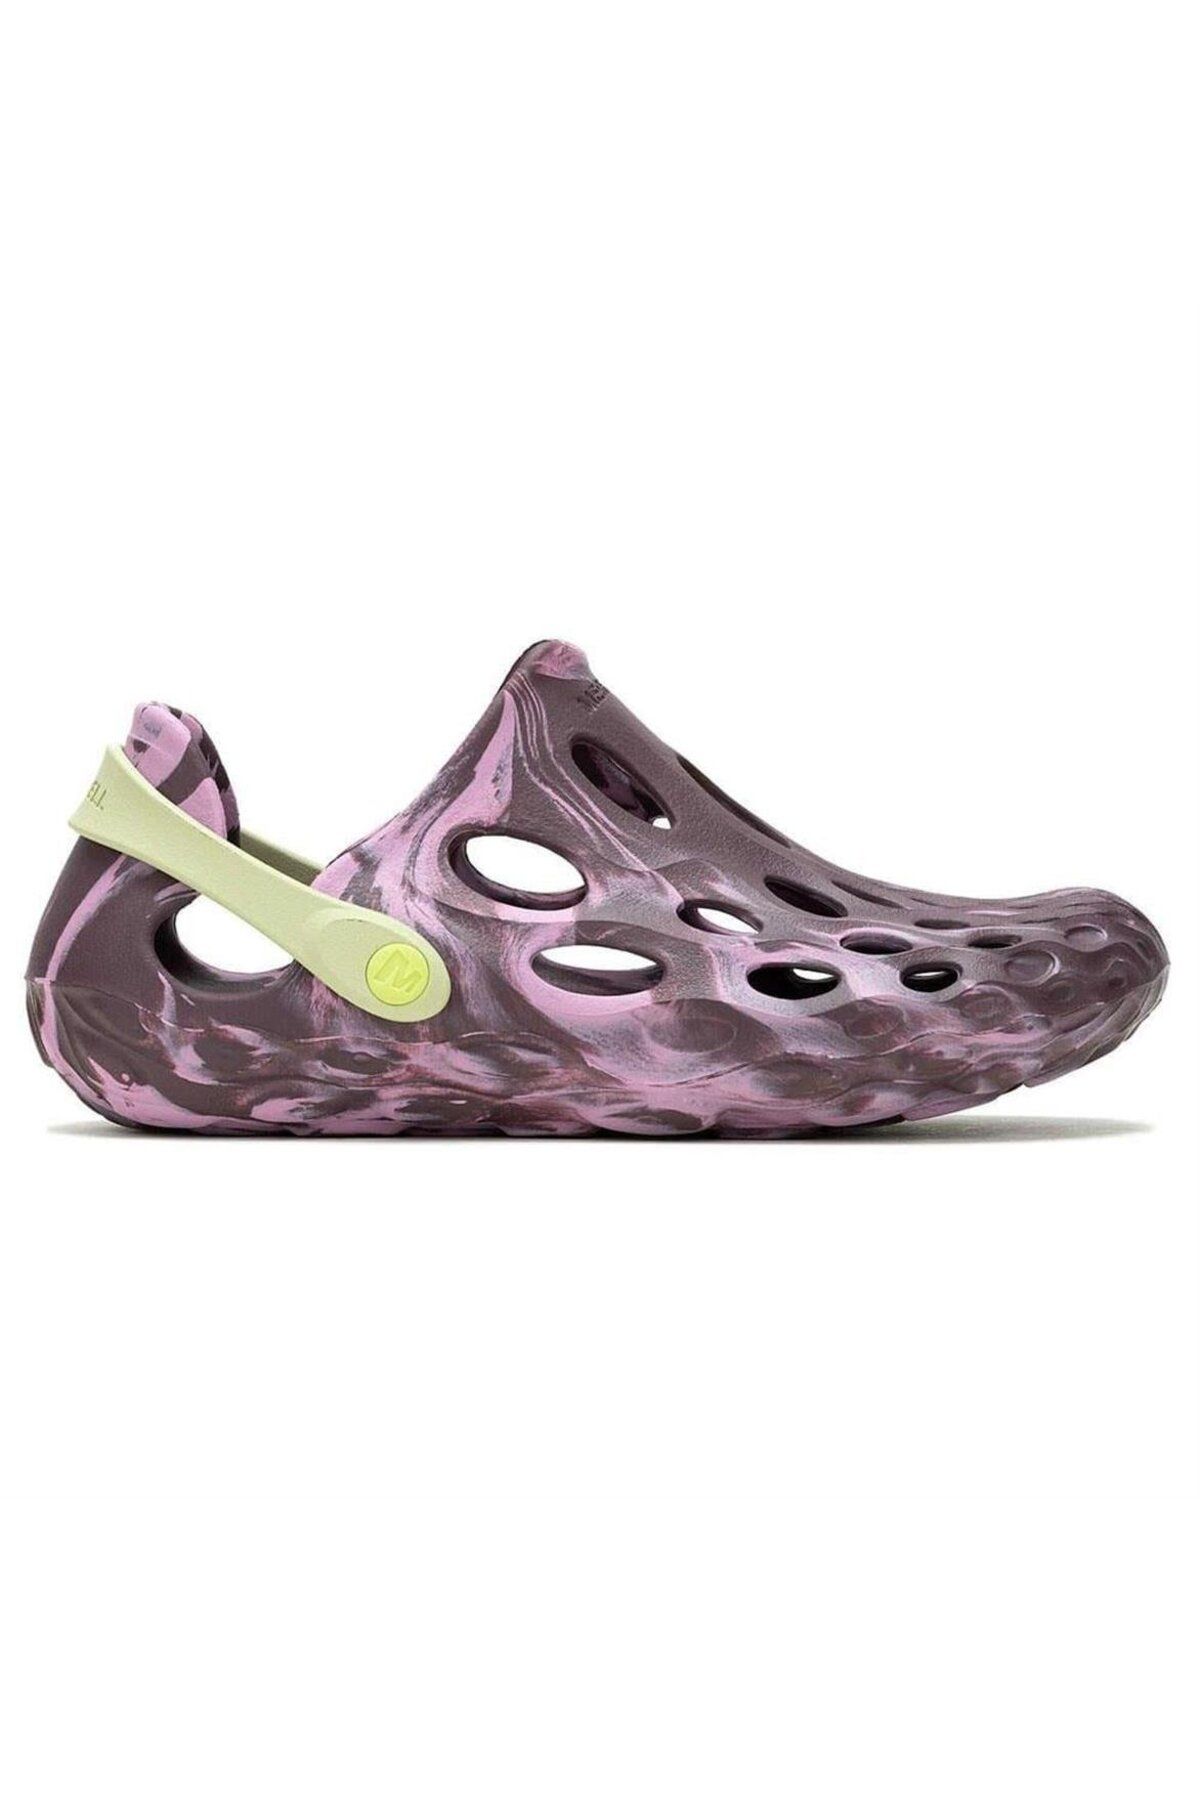 Merrell Hydro Moc Çok Renkli Kadın Sandalet